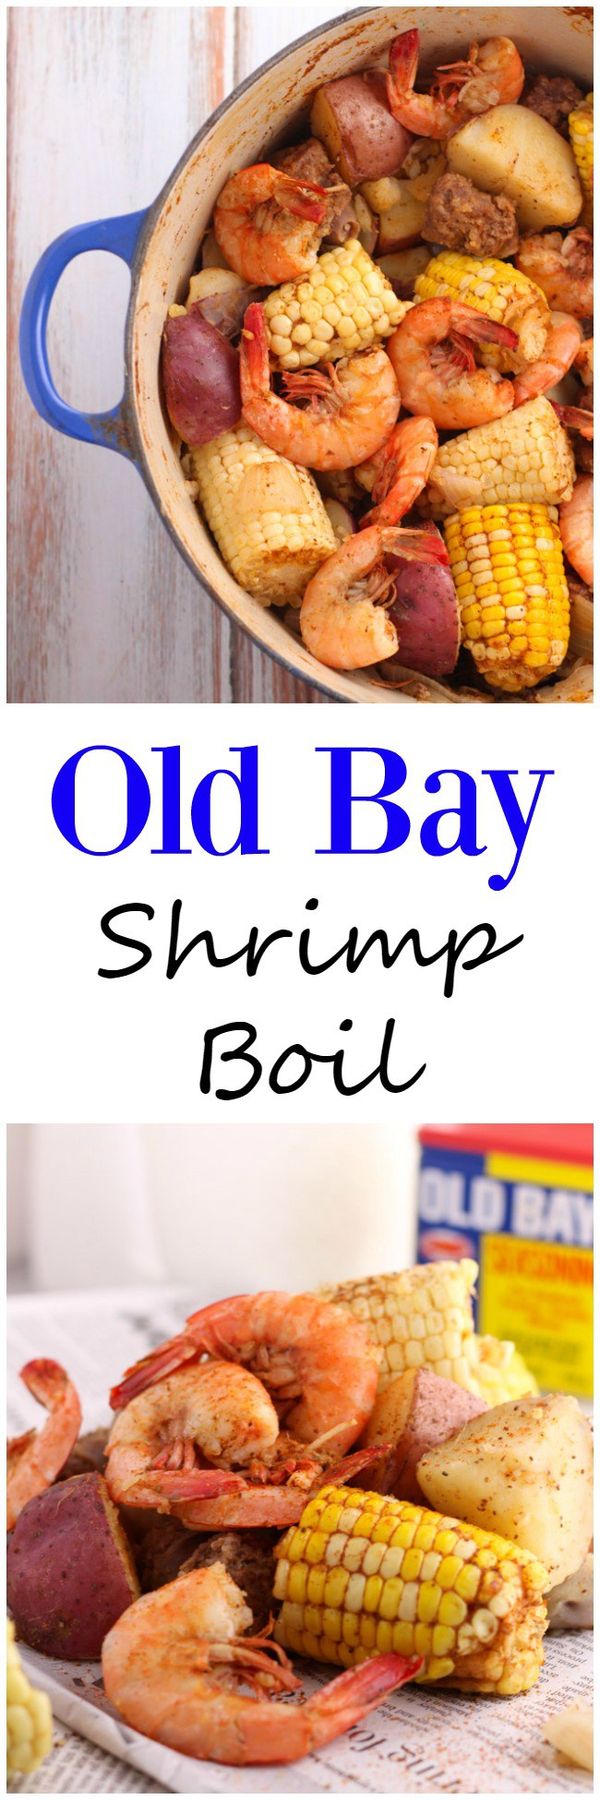 Old Bay Shrimp Boil